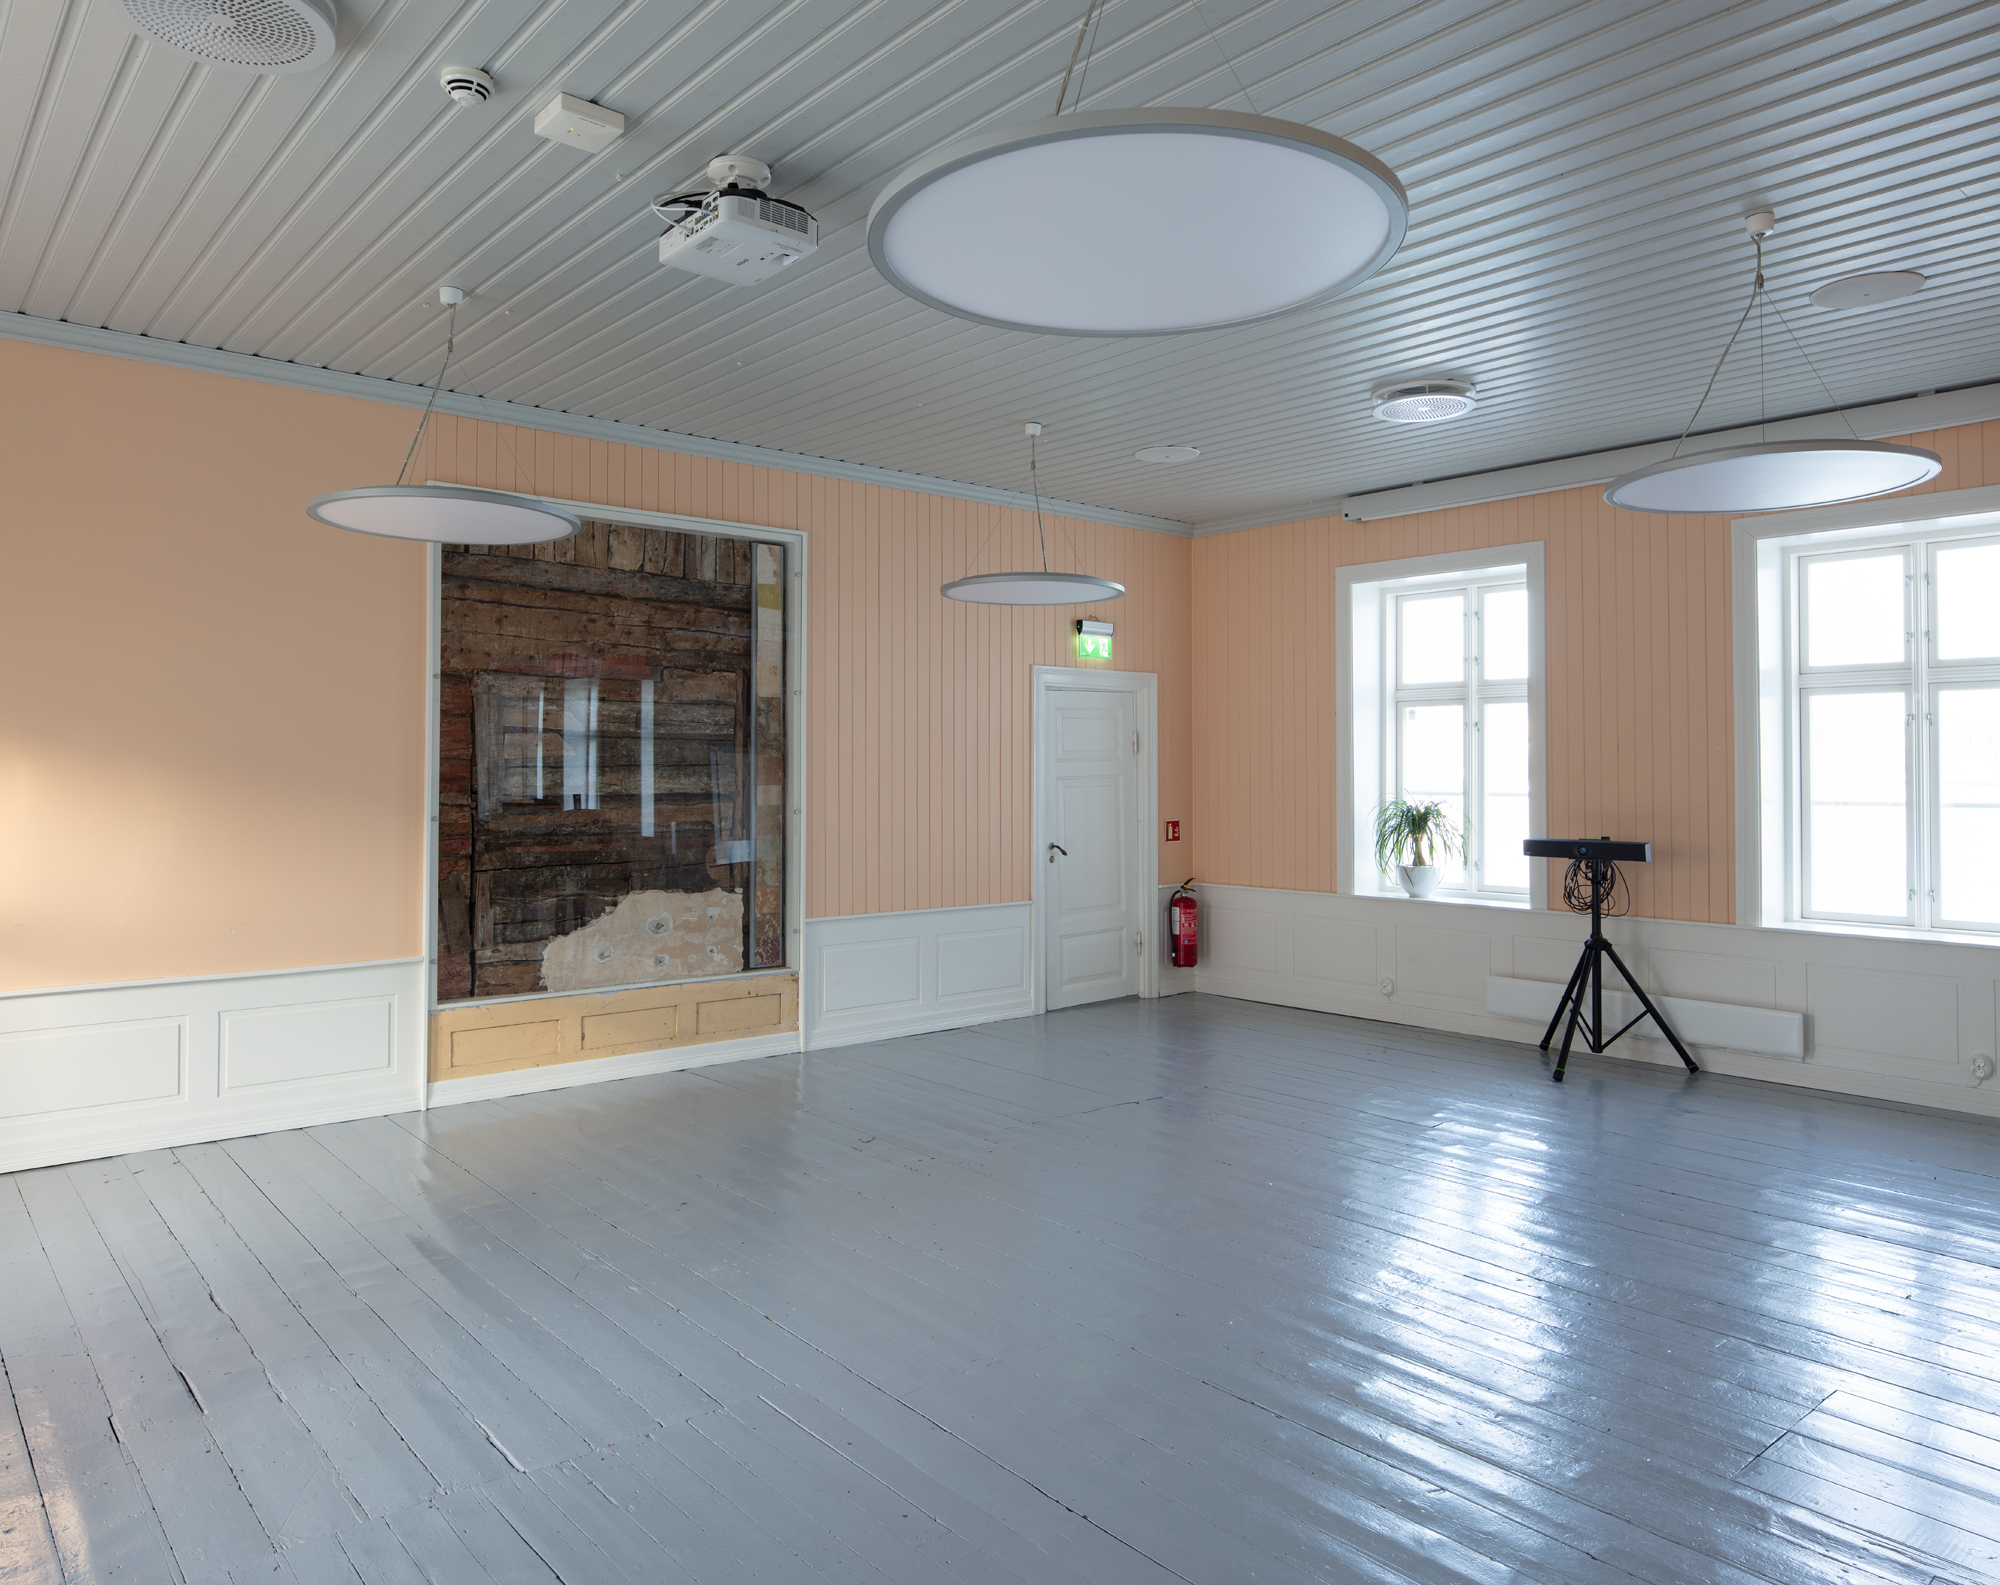 Bildet viser et større rom kledd i trepanel med malt tregulv. Veggene er malt i en lakserosa farge, og i midten av bildet ser man at det er felt inn et vindu som viser de originale veggene i brunt tømmer, bak den rosa trekledningen.